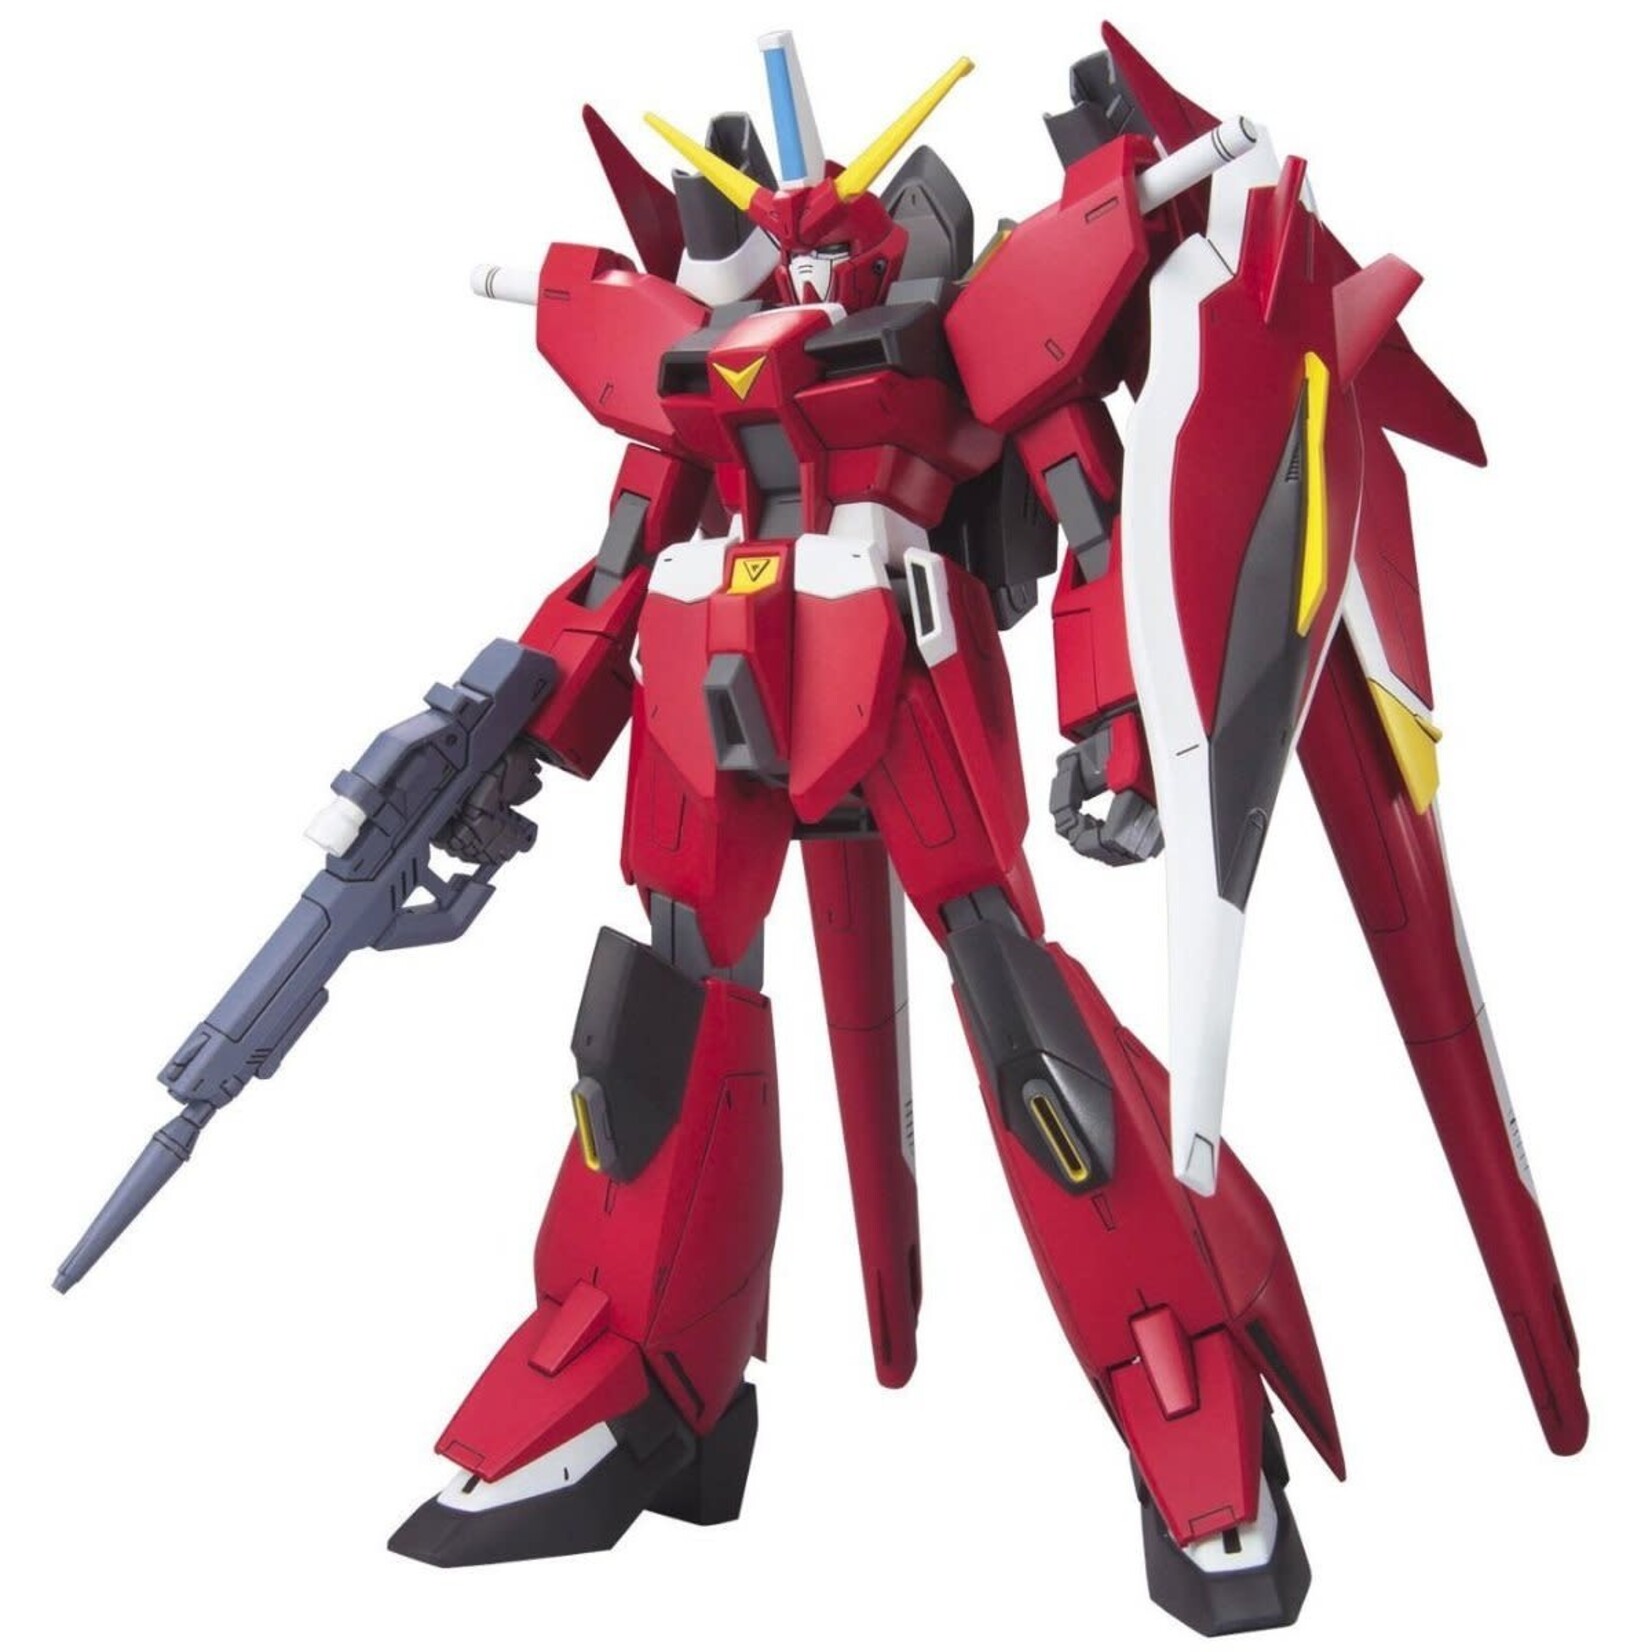 Bandai Bandai 1146730 1/100 #14 Savior Gundam "Gundam SEED Destiny" NG